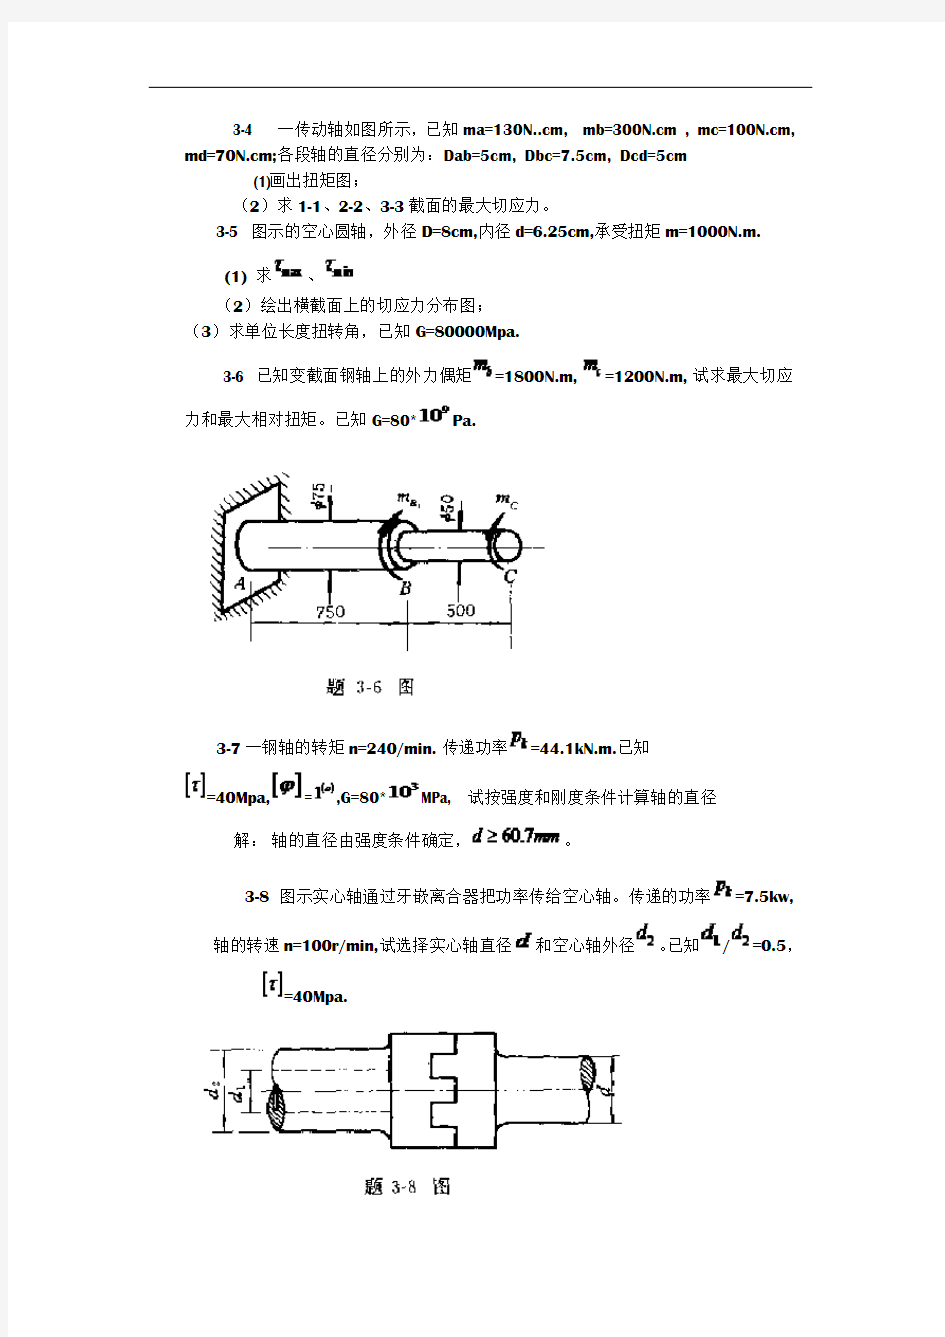 工程力学--材料力学(北京科大、东北大学版)第4版第三章习题答案